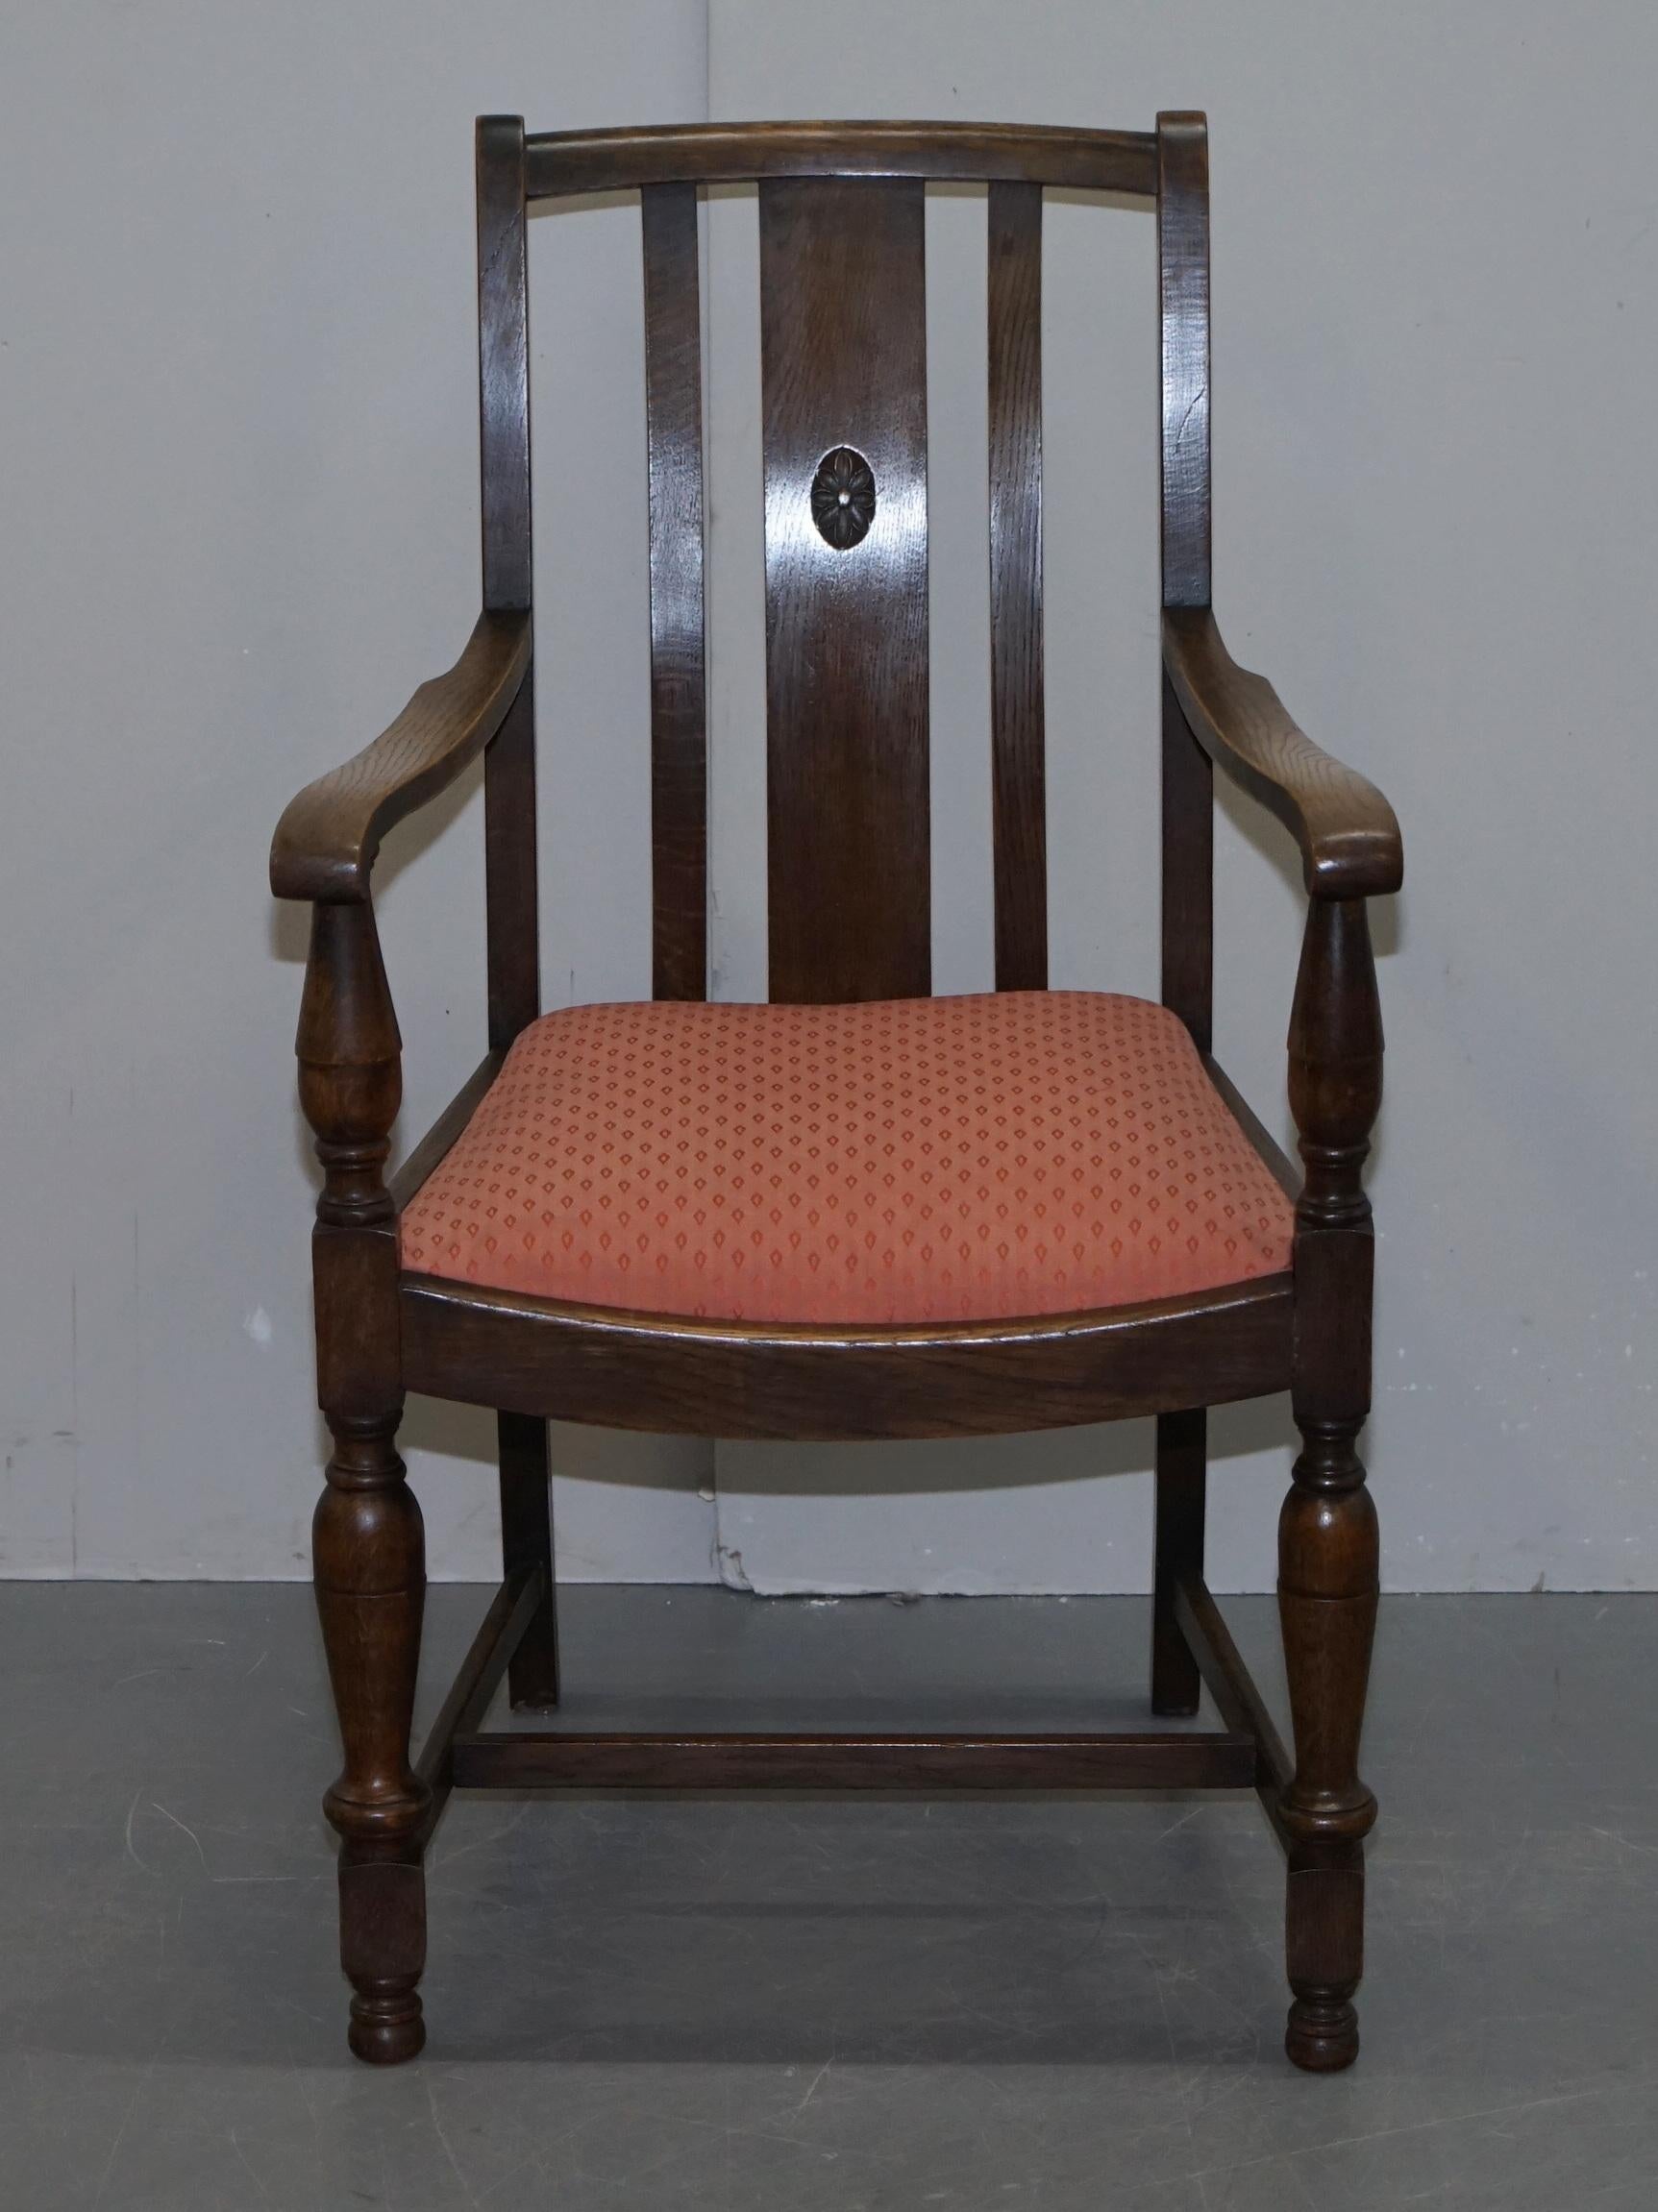 Nous sommes ravis d'offrir à la vente ce joli fauteuil carver occasionnel vintage circa 1940s.

Une belle pièce qui s'intègre bien dans n'importe quel environnement. Les bras sont magnifiquement vieillis, révélant la patine du bois.

En ce qui